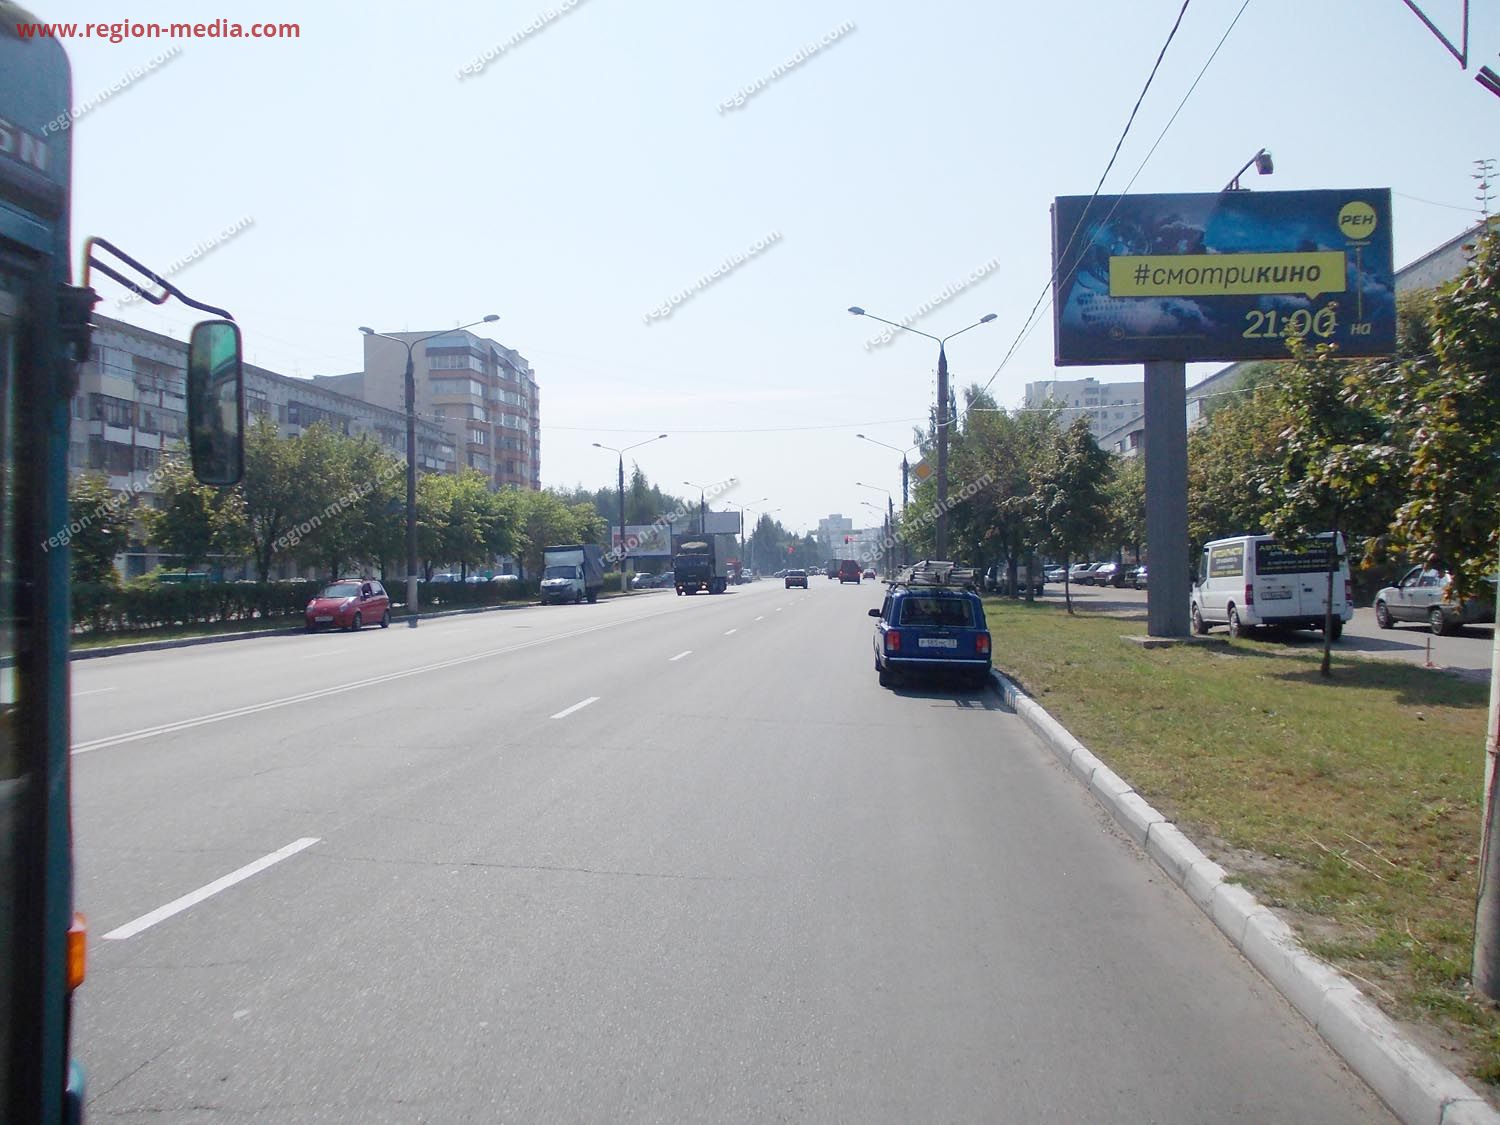 Размещение рекламы компании "Рен" на щитах 3х6 в городе Владимир